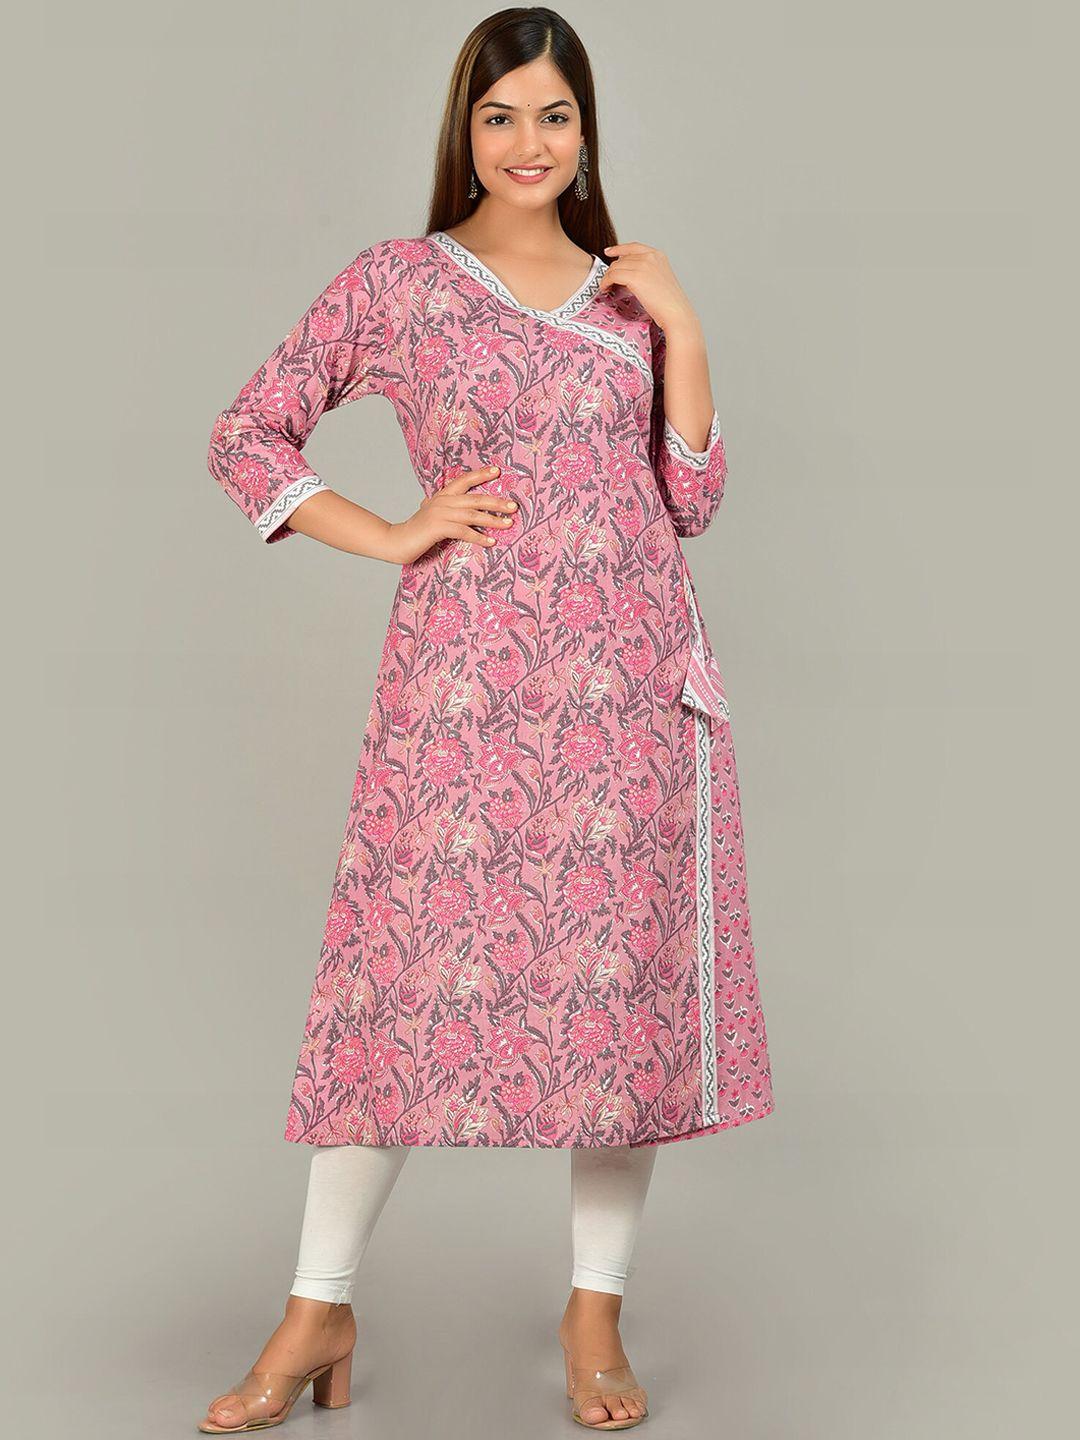 kalini women pink ethnic motifs printed floral cotton anarkali kurta